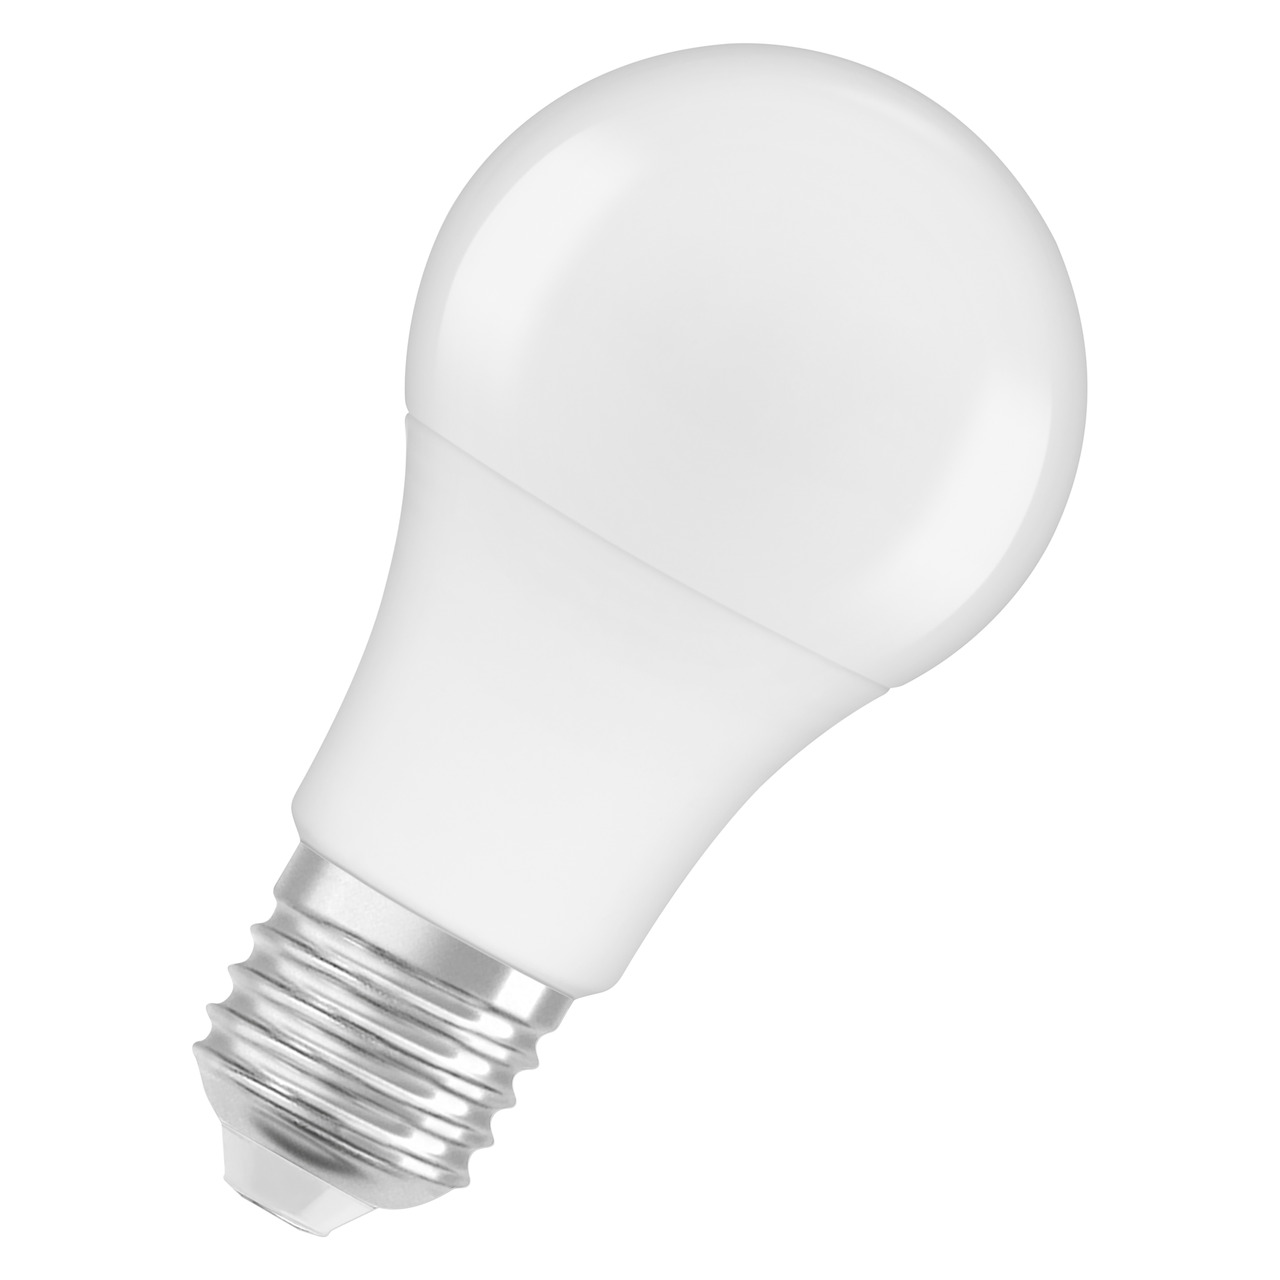 OSRAM 8-5-W-LED-Lampe A60- E27- 806 lm- kaltweiss- matt